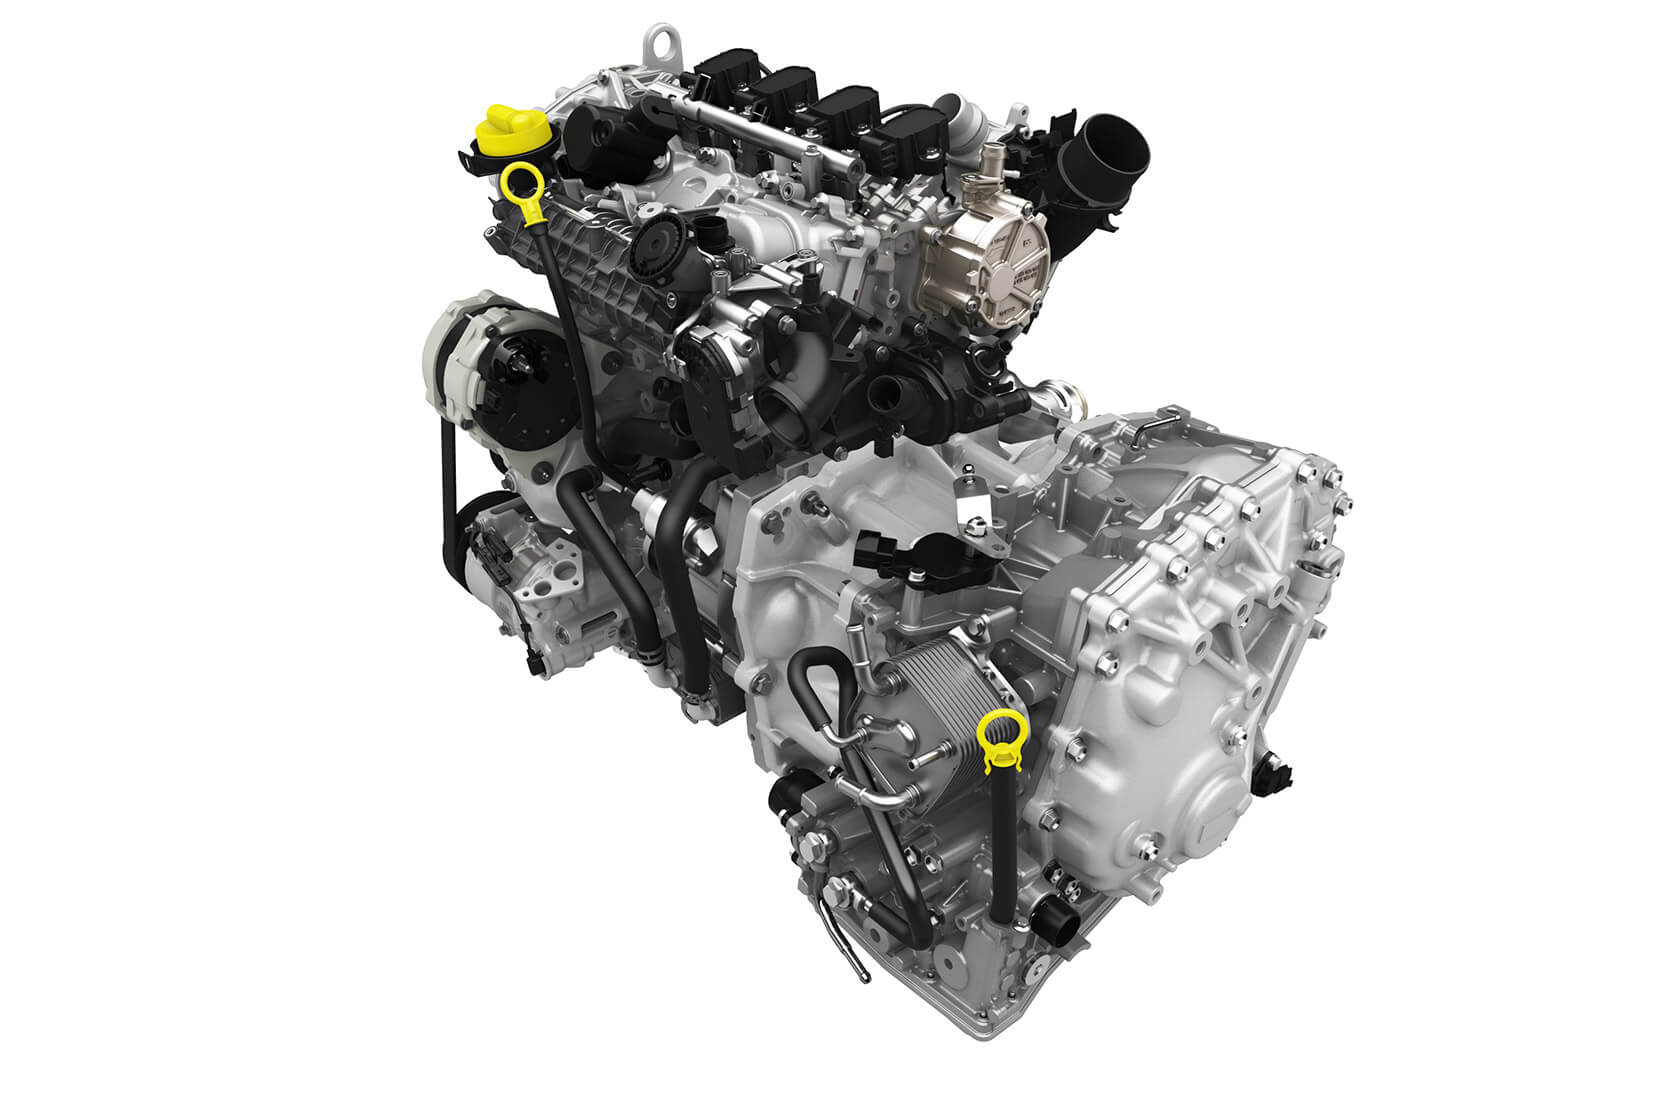 Дастер 1.3 турбо масло. H5ht 1.3 TCE 150. Двигатель Renault 1.3 TCE. Двигатель Renault 1,3 турбо TCE 150. Мотор TCE 150.